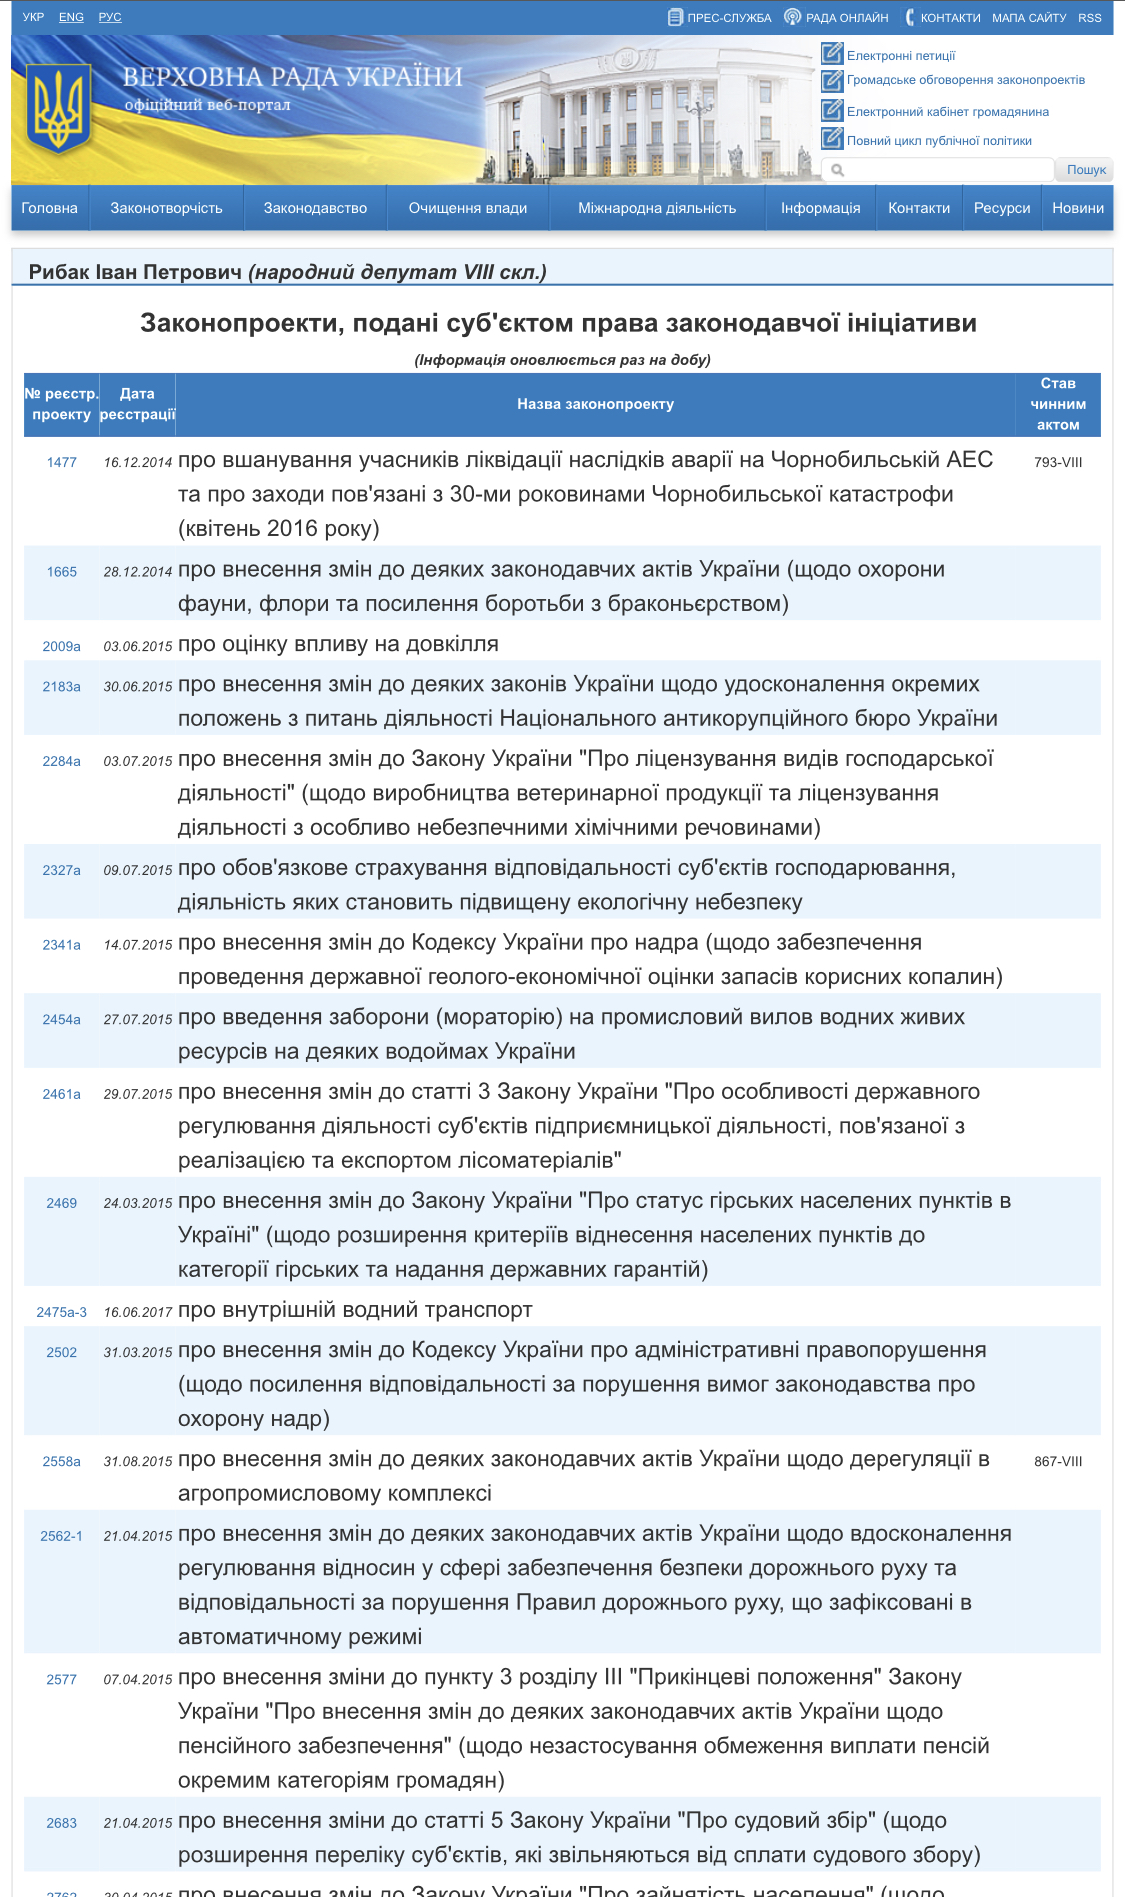 http://w1.c1.rada.gov.ua/pls/pt2/reports.dep2?PERSON=9123&SKL=9